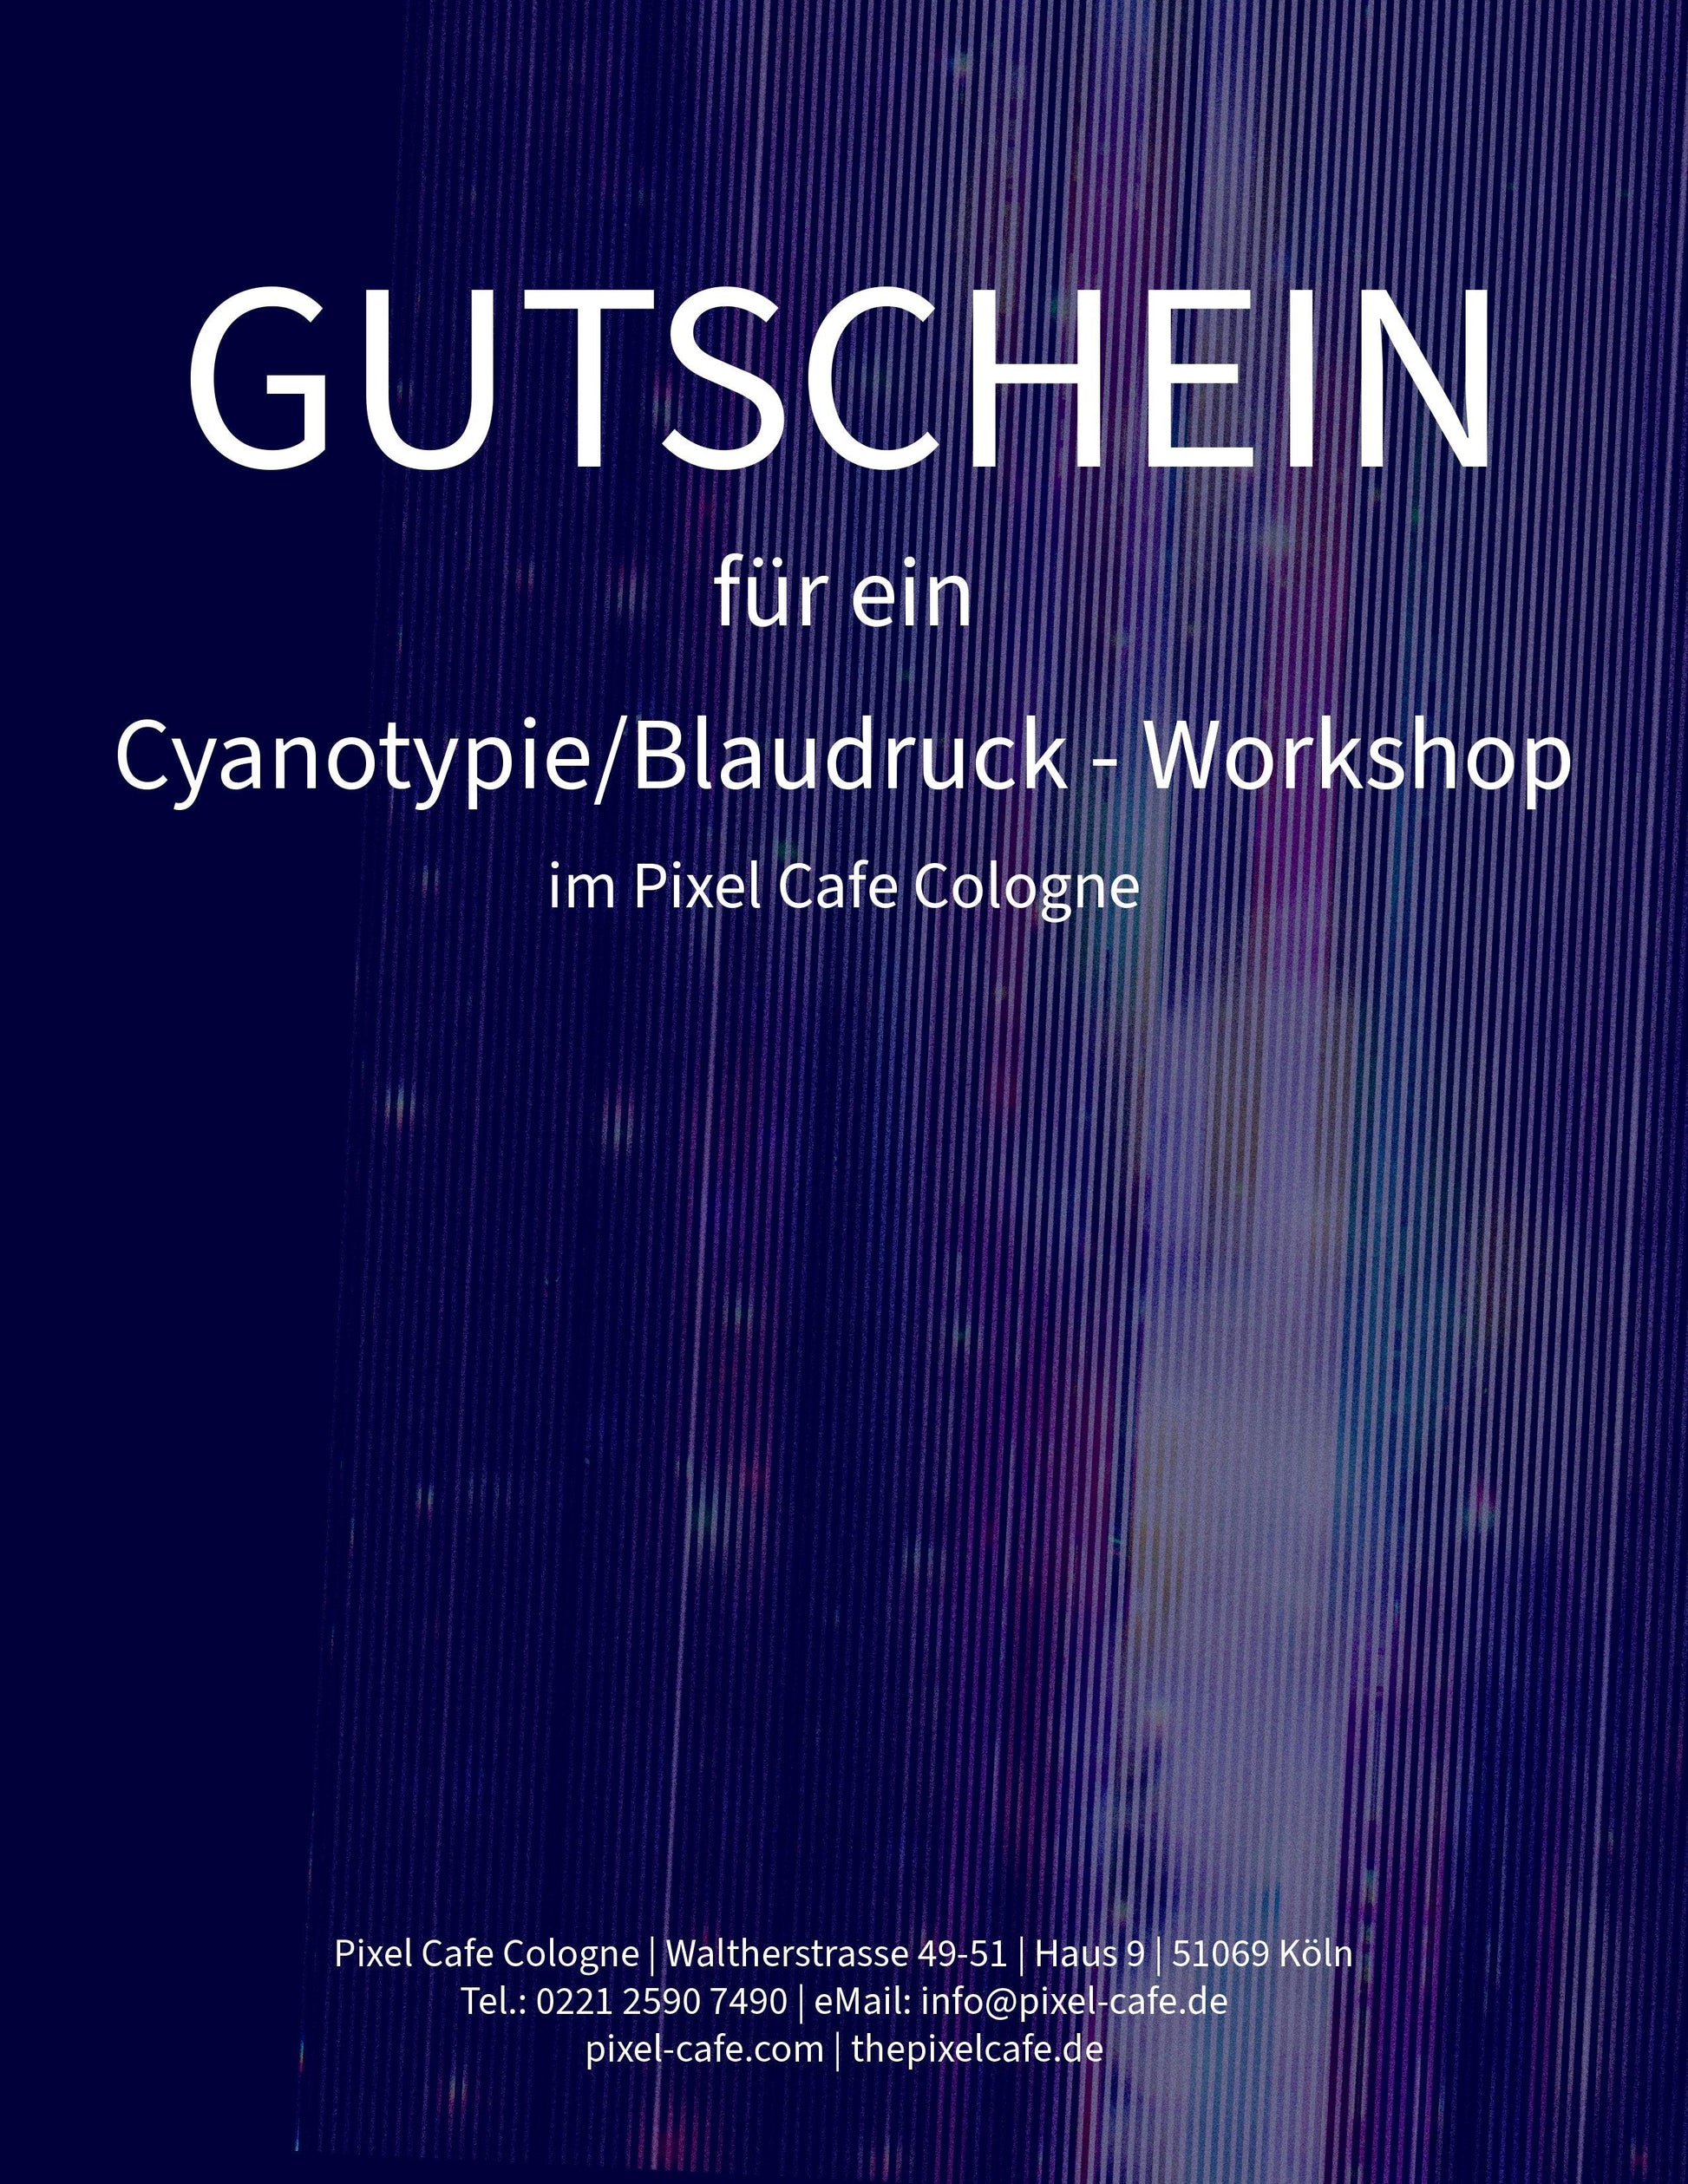 Cyanotypie-Workshop im Pixel Cafe - Pixel Cafe Cologne Blaudruck, Cyanotype, Cyanotypie, Geschenk, Geschenkartikel, Geschenkidee, Gutschein, Weihnachtsgeschenk, Workshop